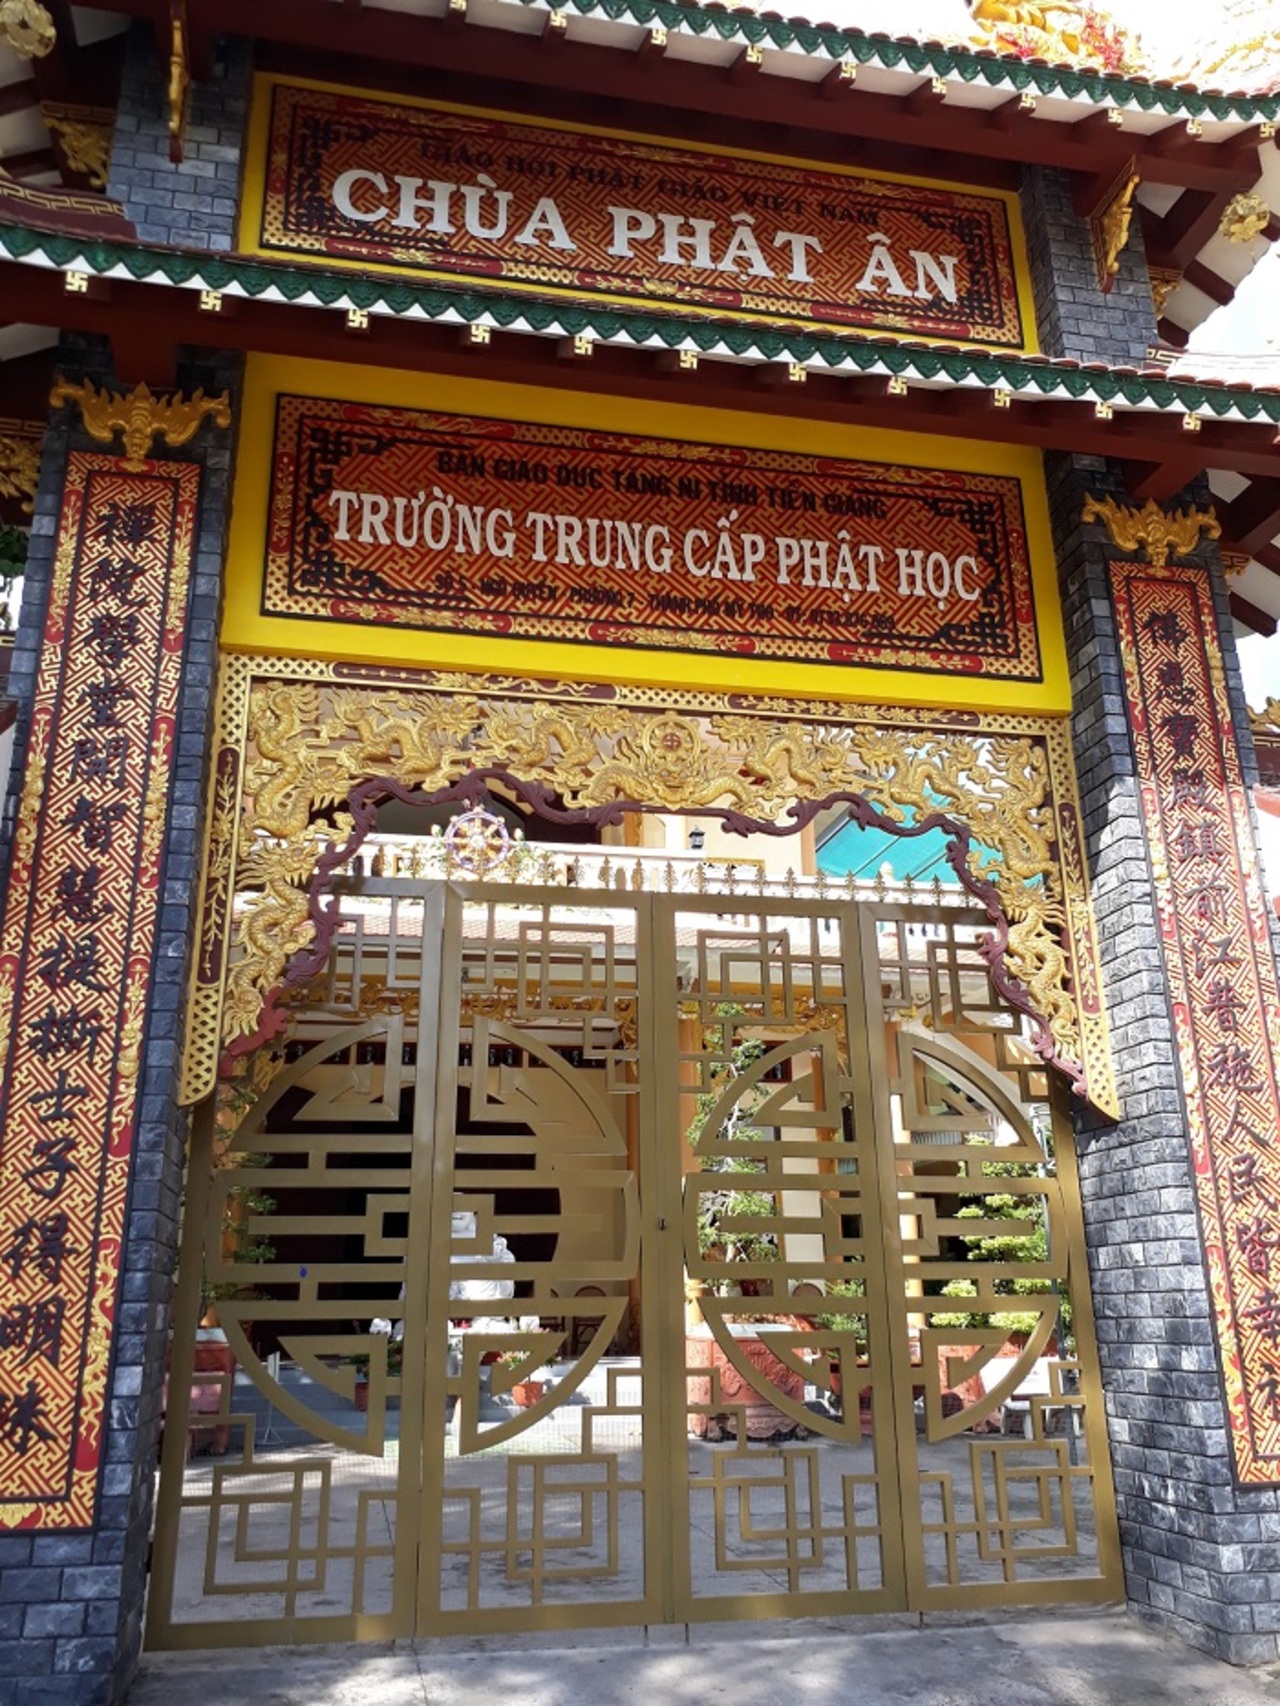 Tour đi Tiền Giang Vĩnh Long từ Sài Gòn trong ngày: Viếng chùa Phật Ân